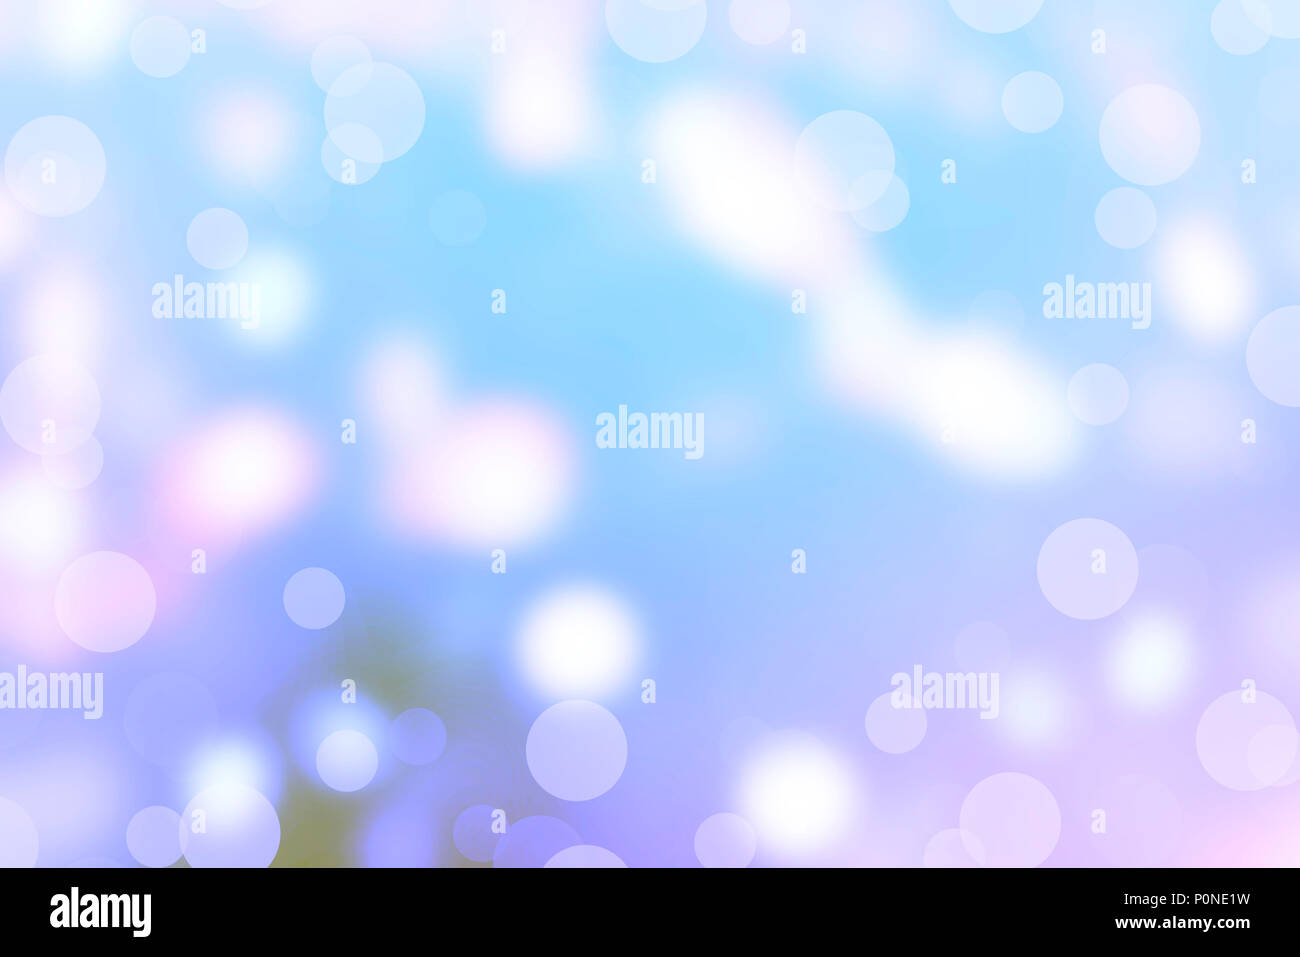 Abstrakte Retro Hintergrund Textur rauhe Stellen mit hellen Pastellfarben mit blau getönter Foto Seite lange Banner Web Design Stockfoto